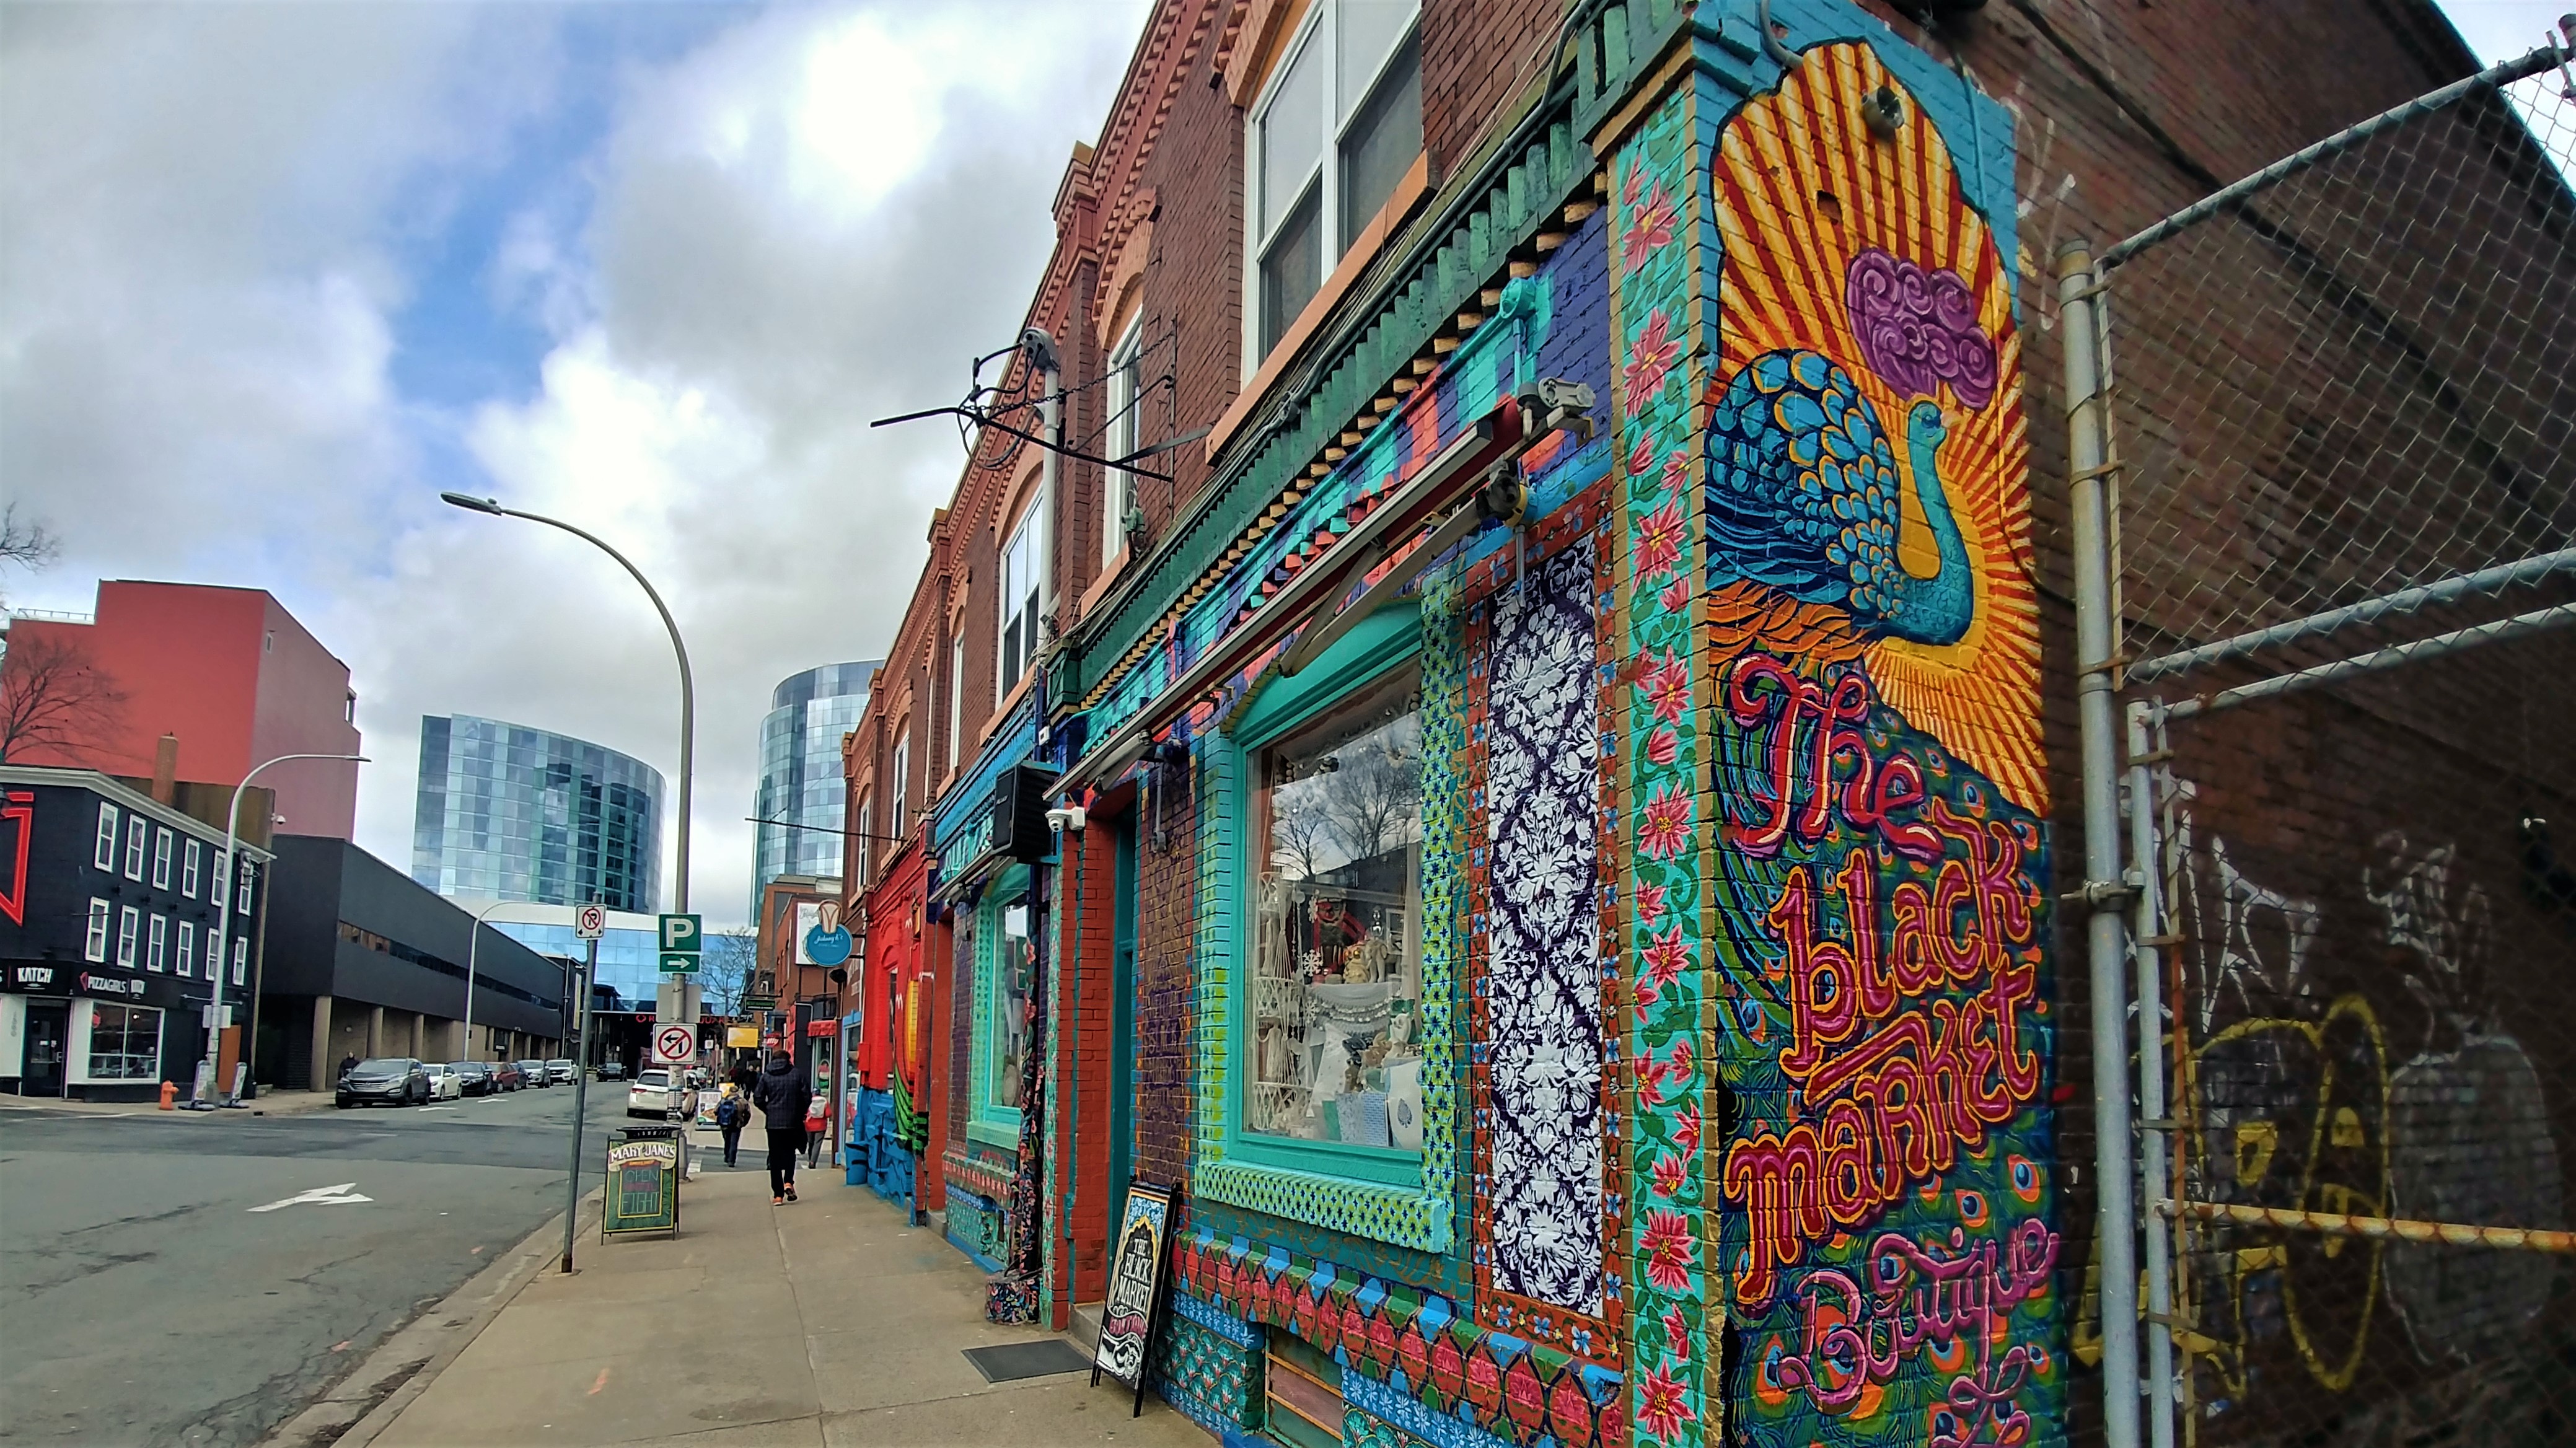 Halifax street art centre-ville que faire nouvelle-ecosse blog voyage arpenter le chemin